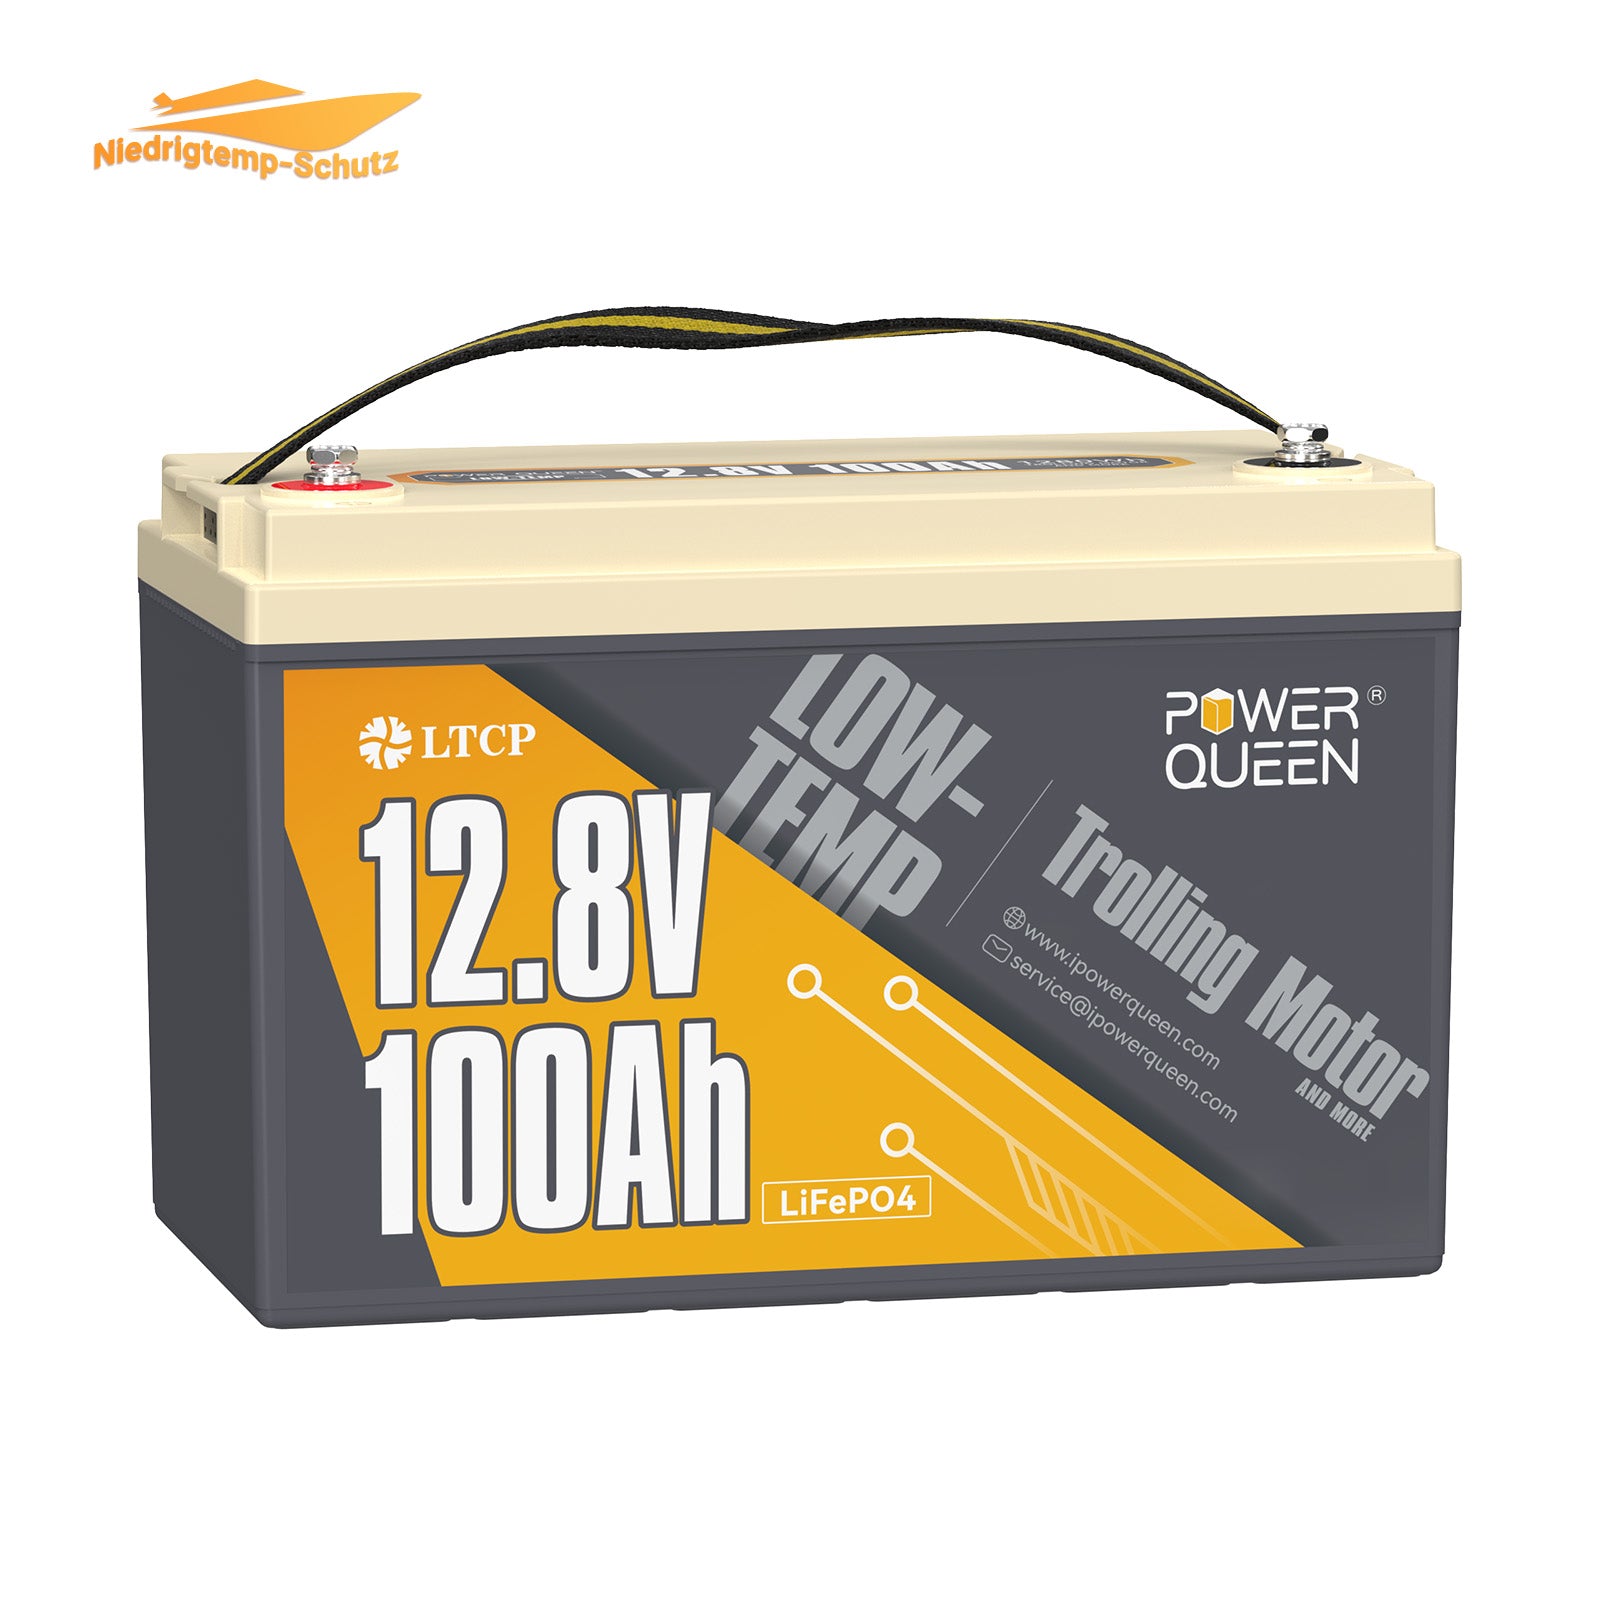 Power Queen 12.8V 100Ah batería LiFePO4 de baja temperatura, batería de motor de pesca con curricán